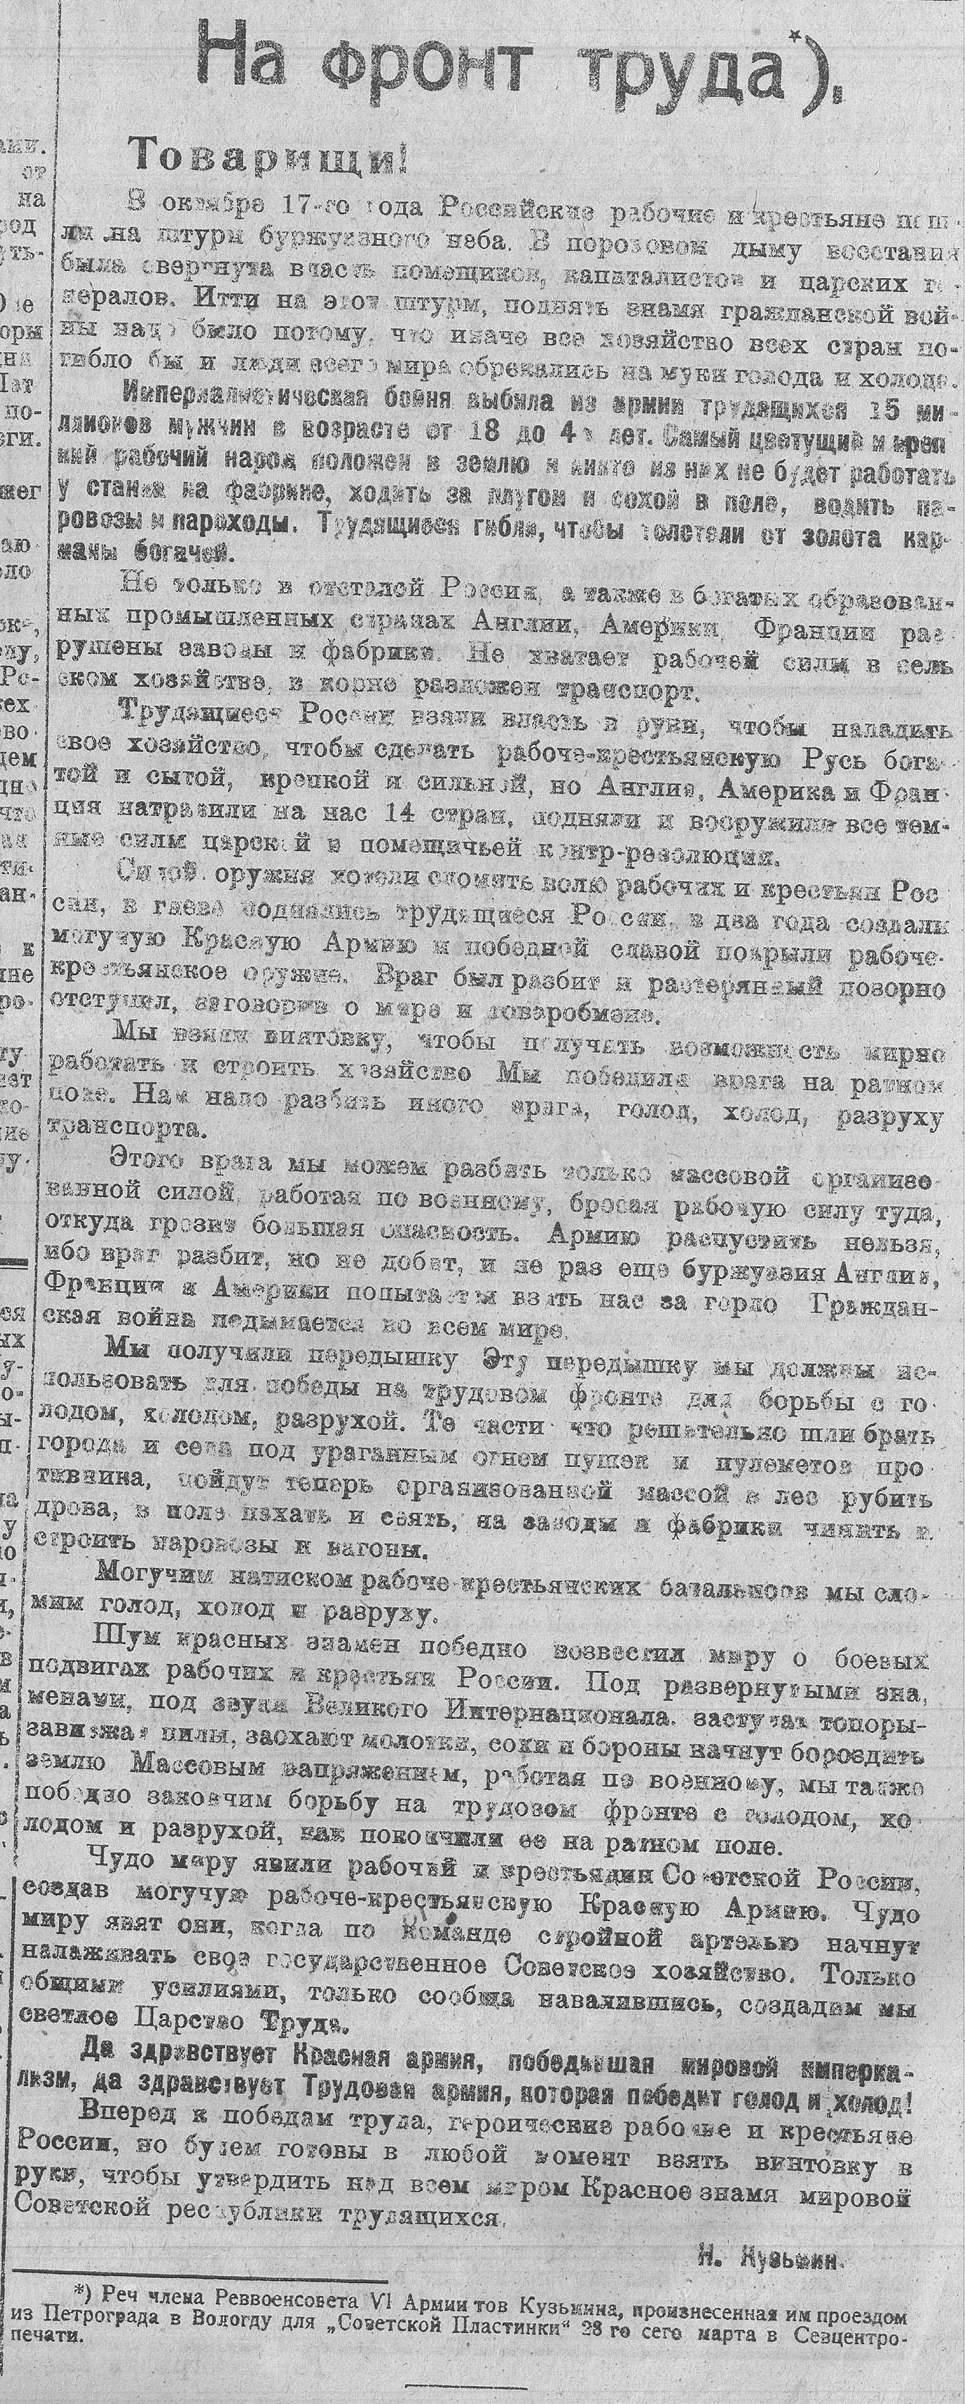 На фронт труда (речь, произнесенная для "Советской пластинки" 28 марта 1920 года)